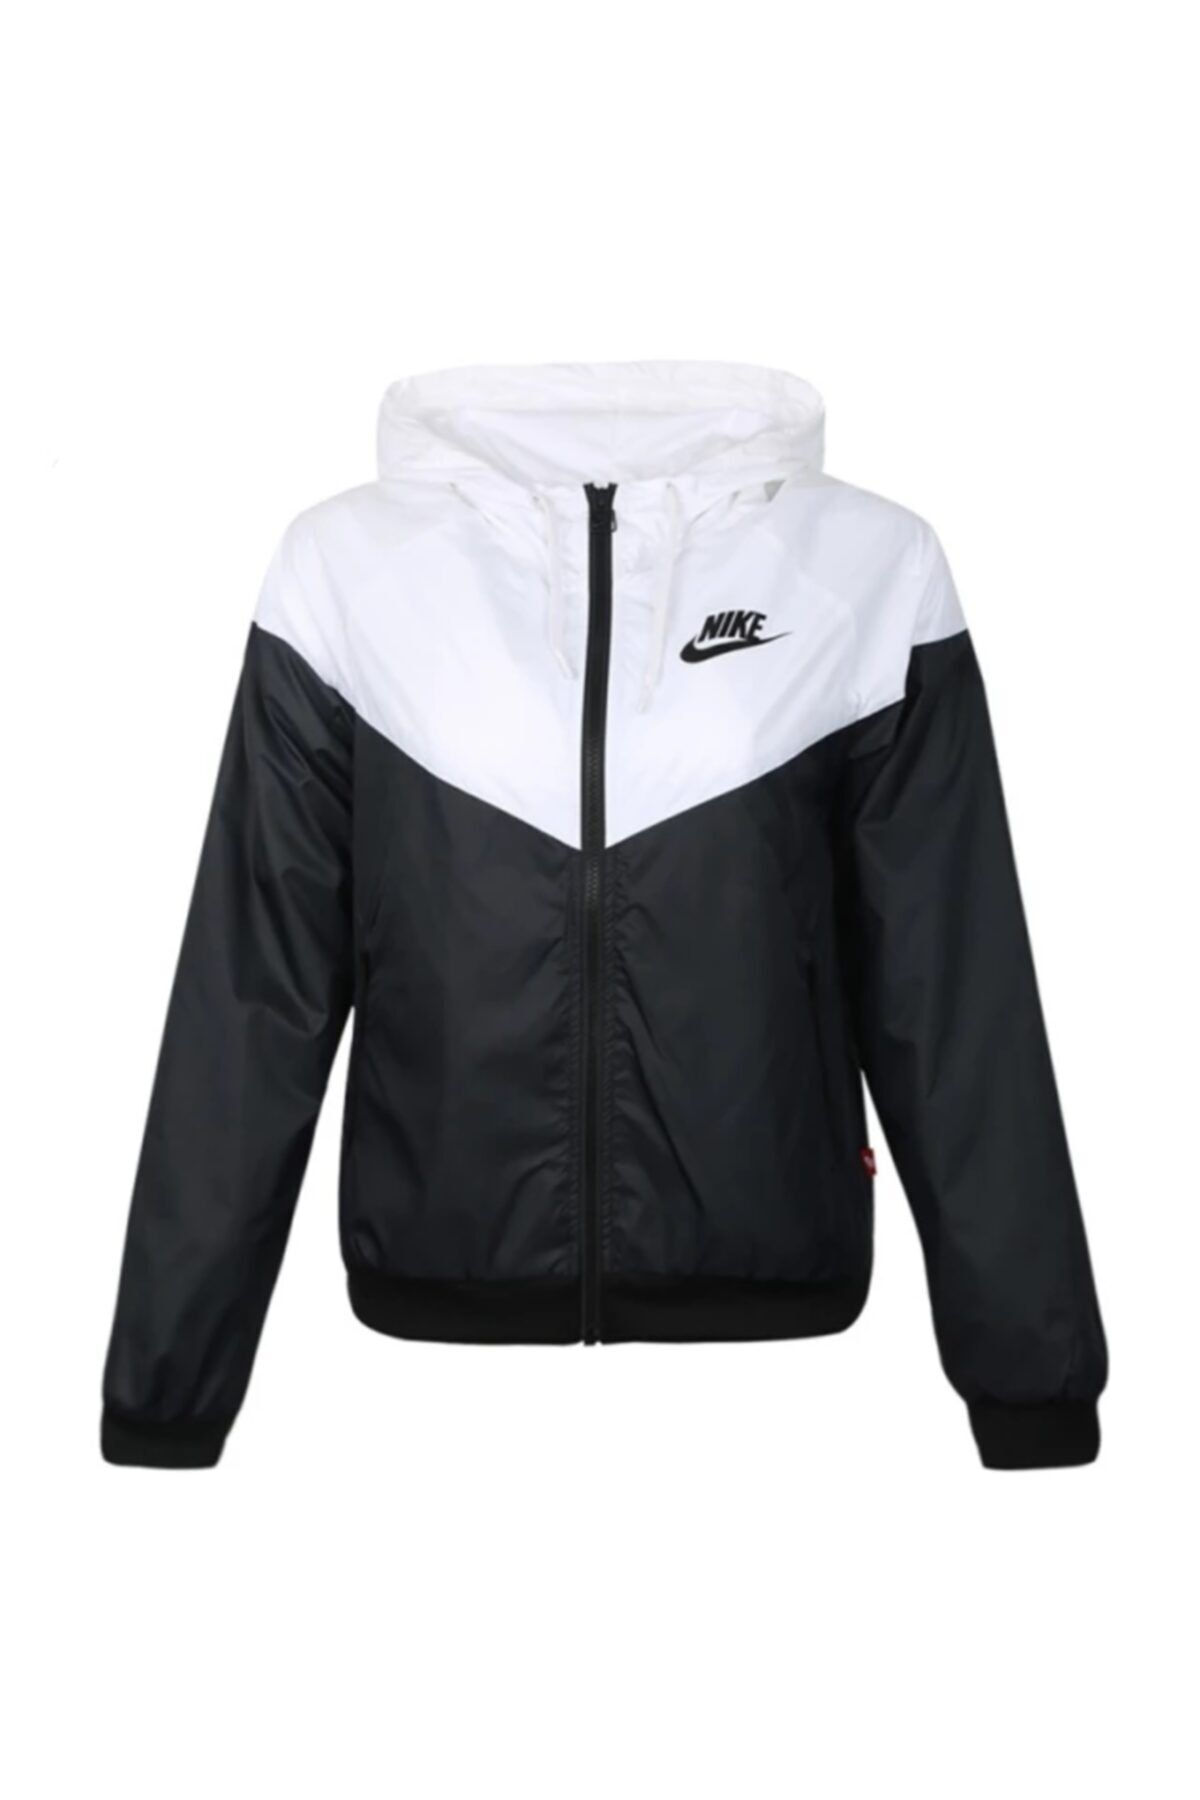 Nike Sportswear Womens Windrunner Jacket Cn6910-011